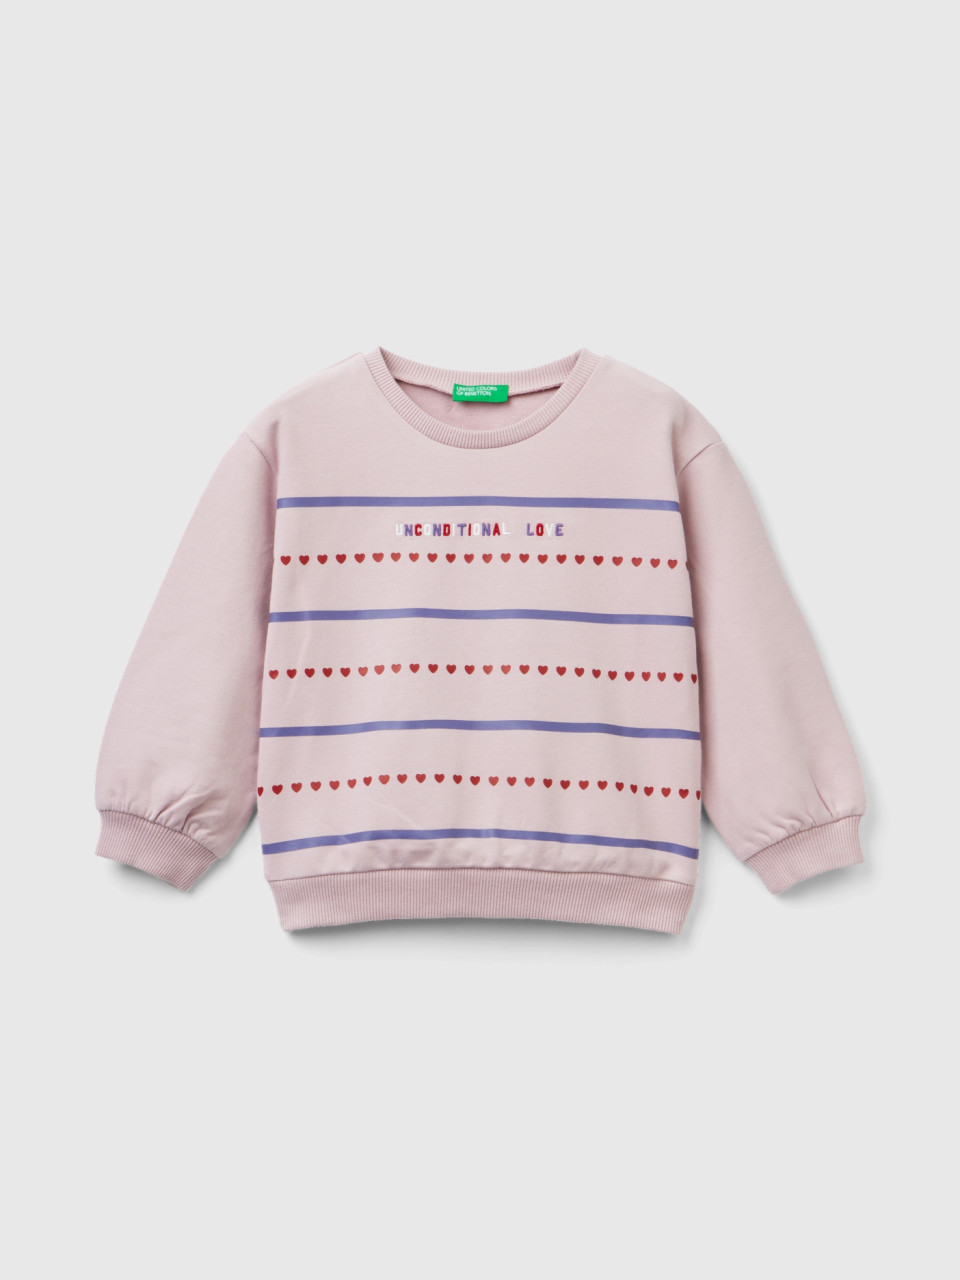 Benetton, Sweatshirt Mit Print Und Stickereien, Pink, female